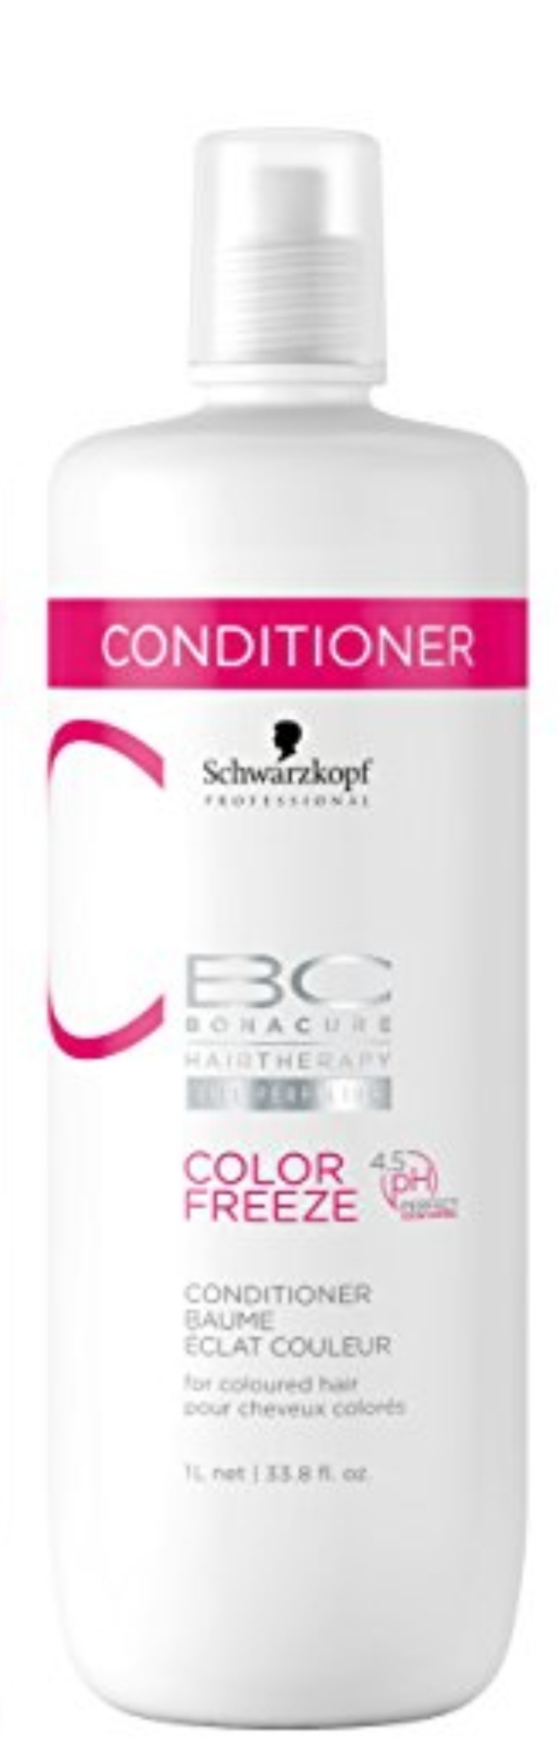 فراورده های حالت دهنده ،نرم کننده وتثبیت کننده آرایش مو (کرمها ، لوسیونها وروغنها) BC BONACURE HAIRTHERAPY CELL PERFECTOR COLOR FREEZE CONDITIONER for coloured hair 1L